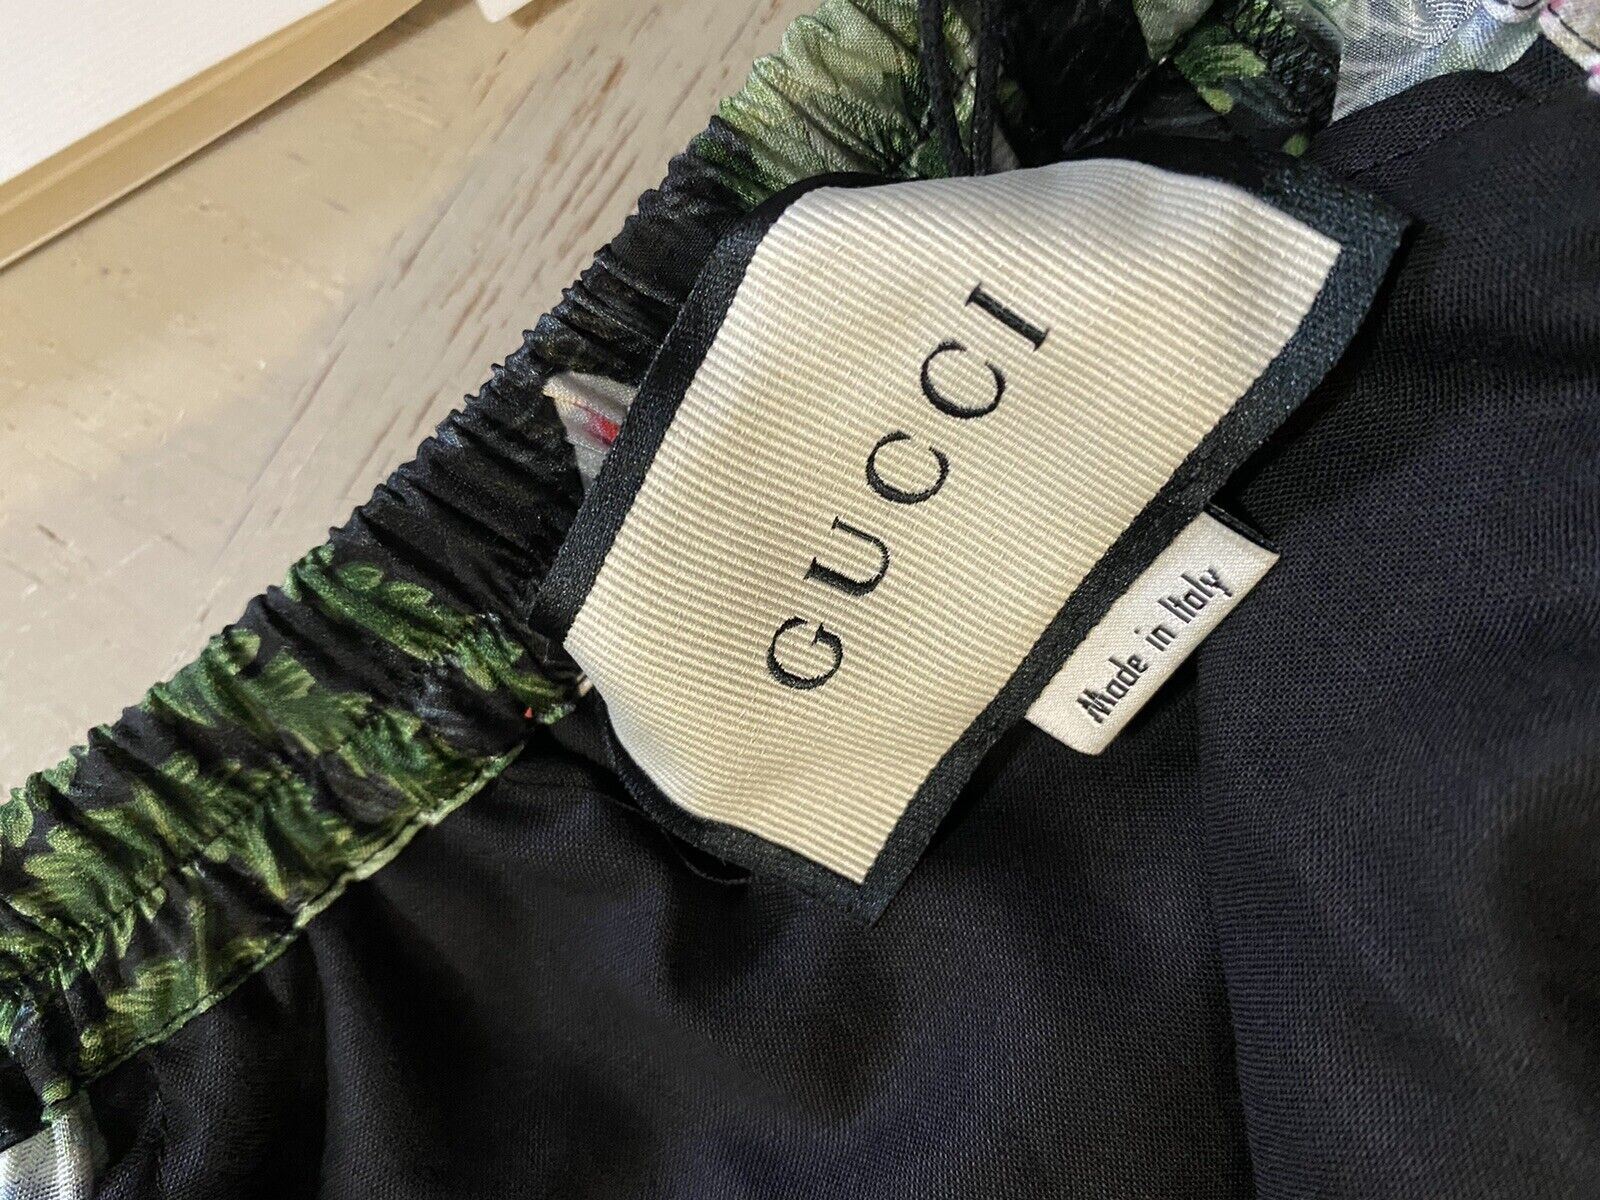 Мужские шорты Gucci Soul Monogram за 980 долларов NWT, черные/зеленые/мульти, 32 США/48